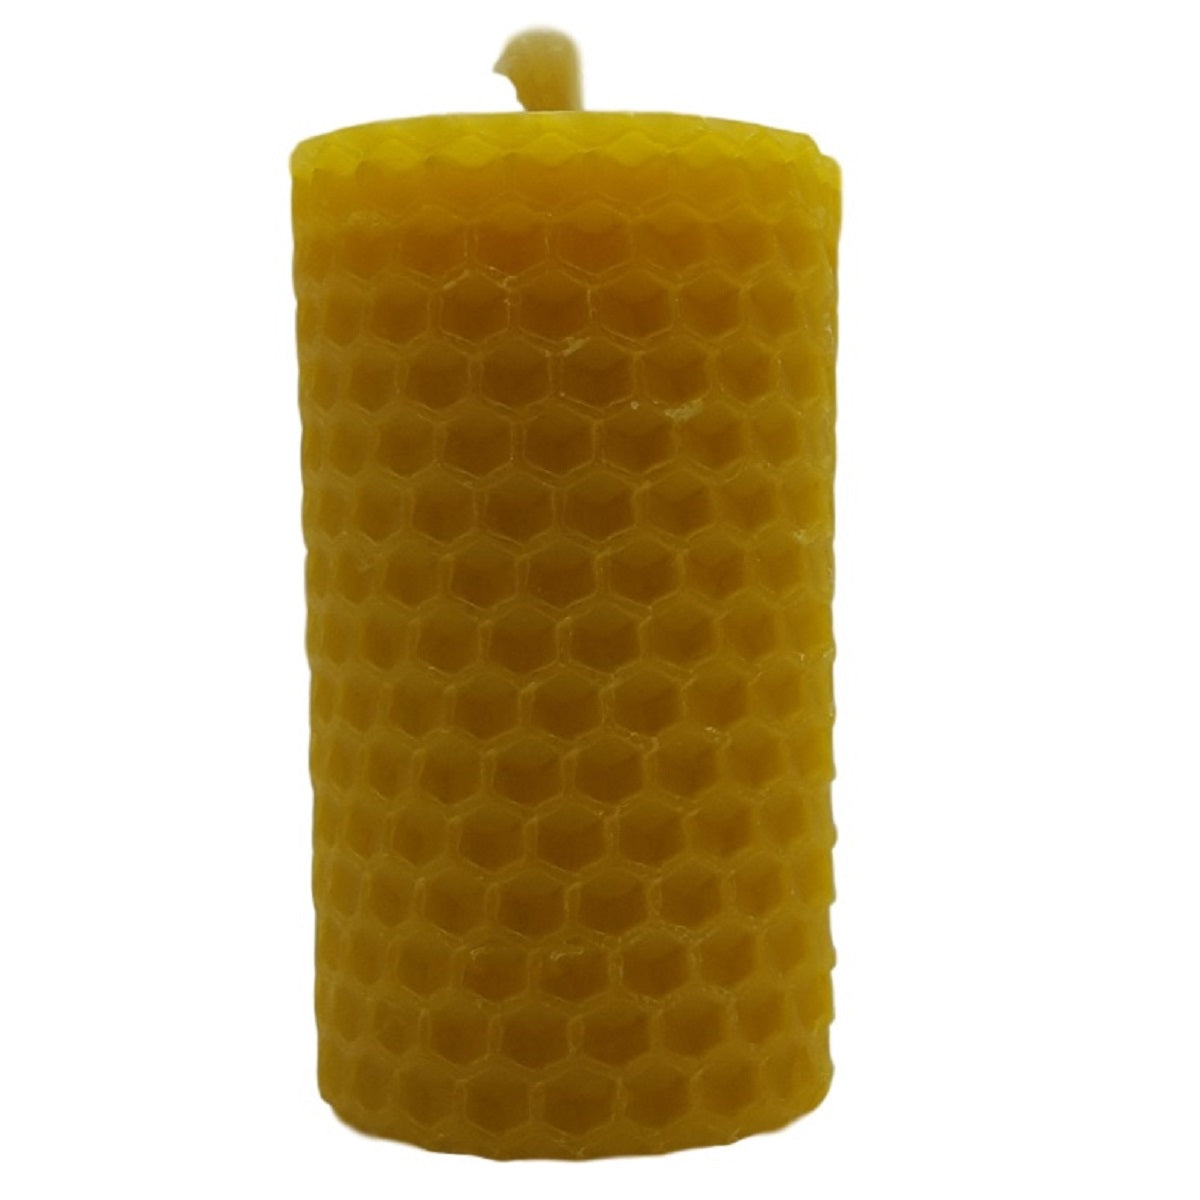 Honey Wax Candles Wholesale Enjoy